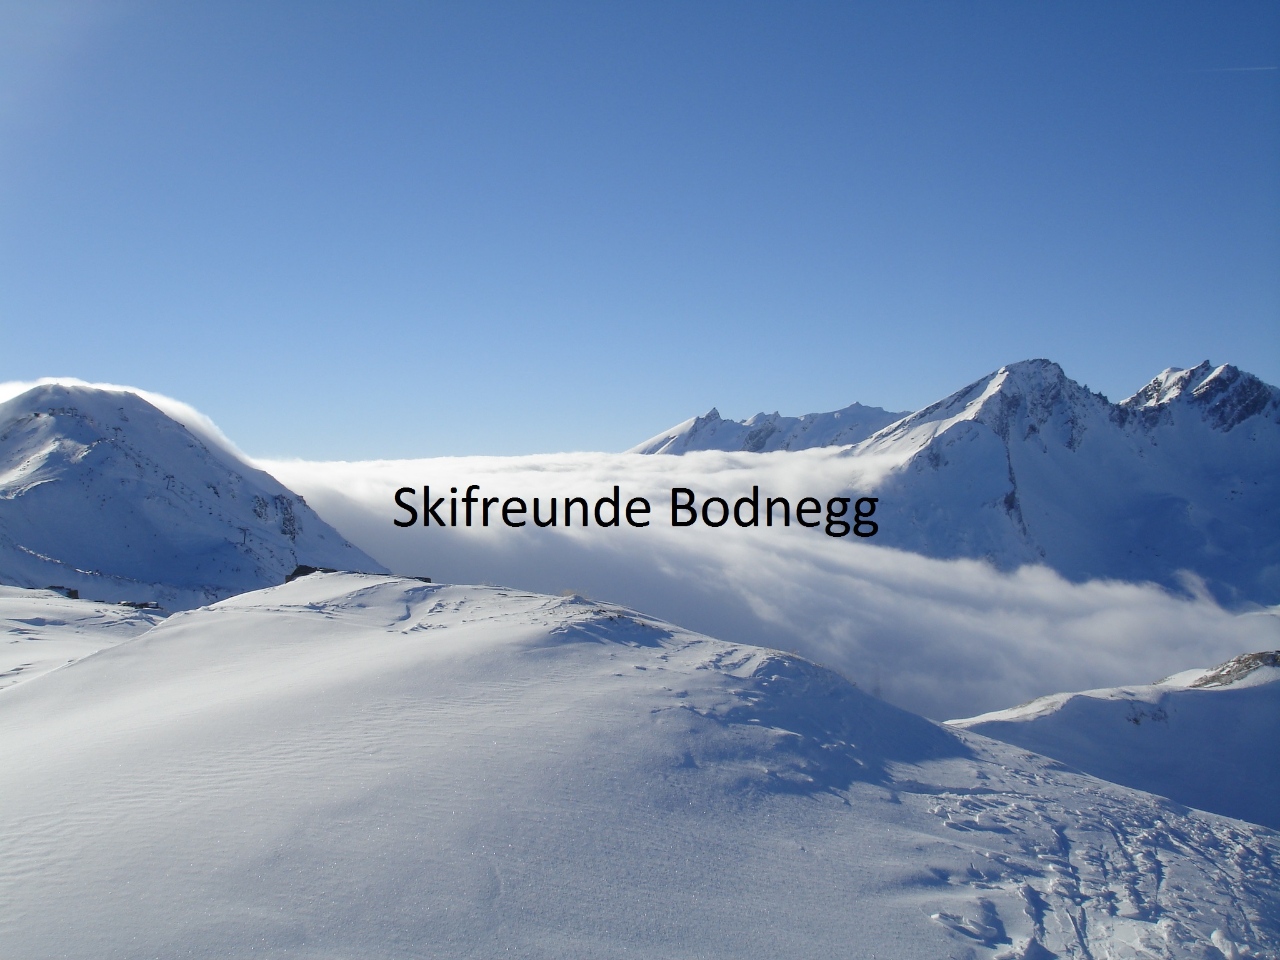 (c) Skifreunde-bodnegg.de